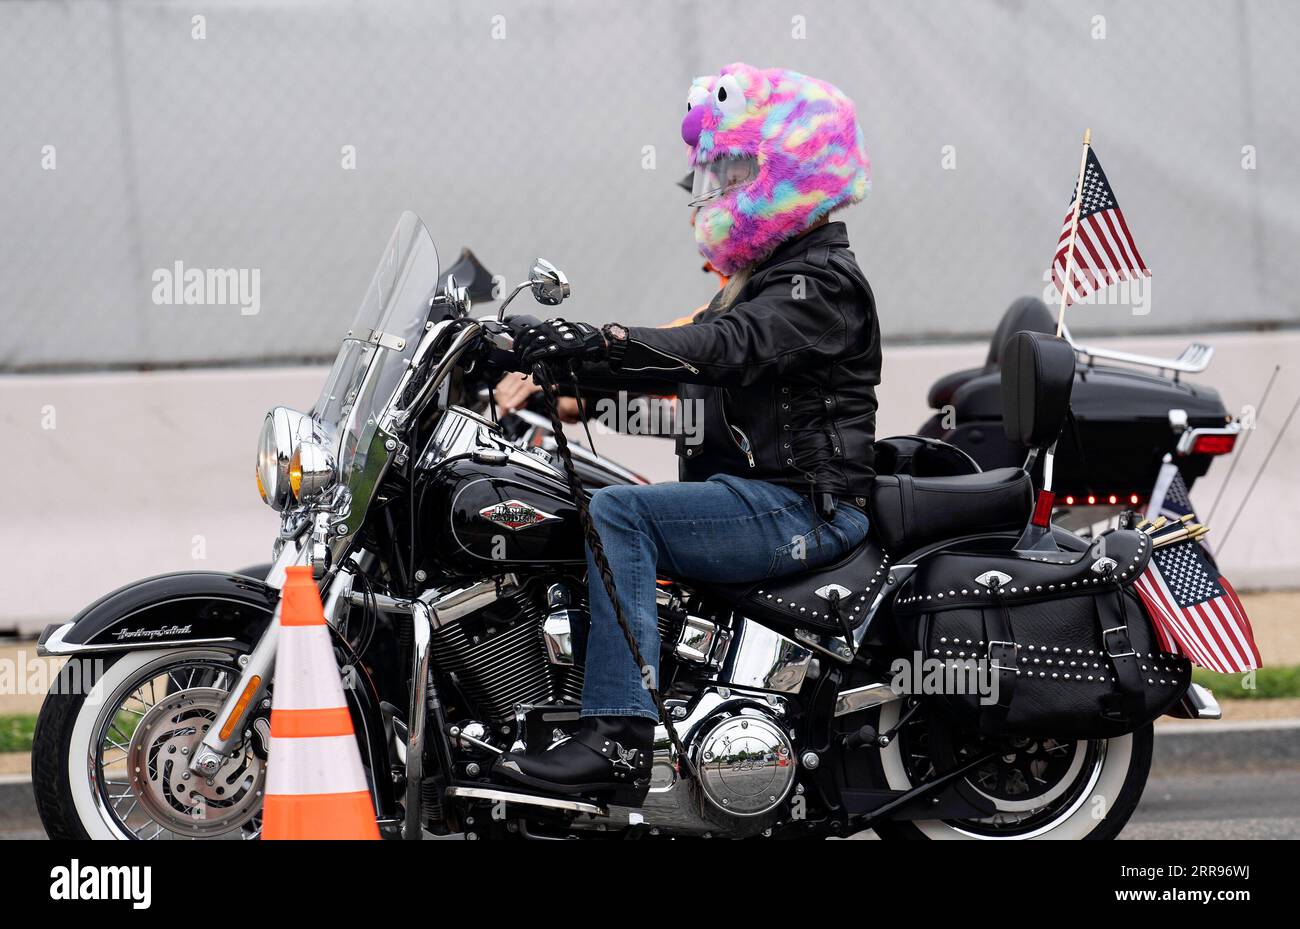 210530 -- WASHINGTON, le 30 mai 2021 -- Un motocycliste participe au tour de moto Rolling Thunder à Washington, D.C., États-Unis, le 30 mai 2021. Les motocyclistes sont descendus dimanche sur la capitale nationale pour participer à la balade annuelle Rolling Thunder pour commémorer le jour du souvenir. ÉTATS-UNIS-WASHINGTON, DC-ROLLING THUNDER-MOTORCYCLE RIDE LIUXJIE PUBLICATIONXNOTXINXCHN Banque D'Images